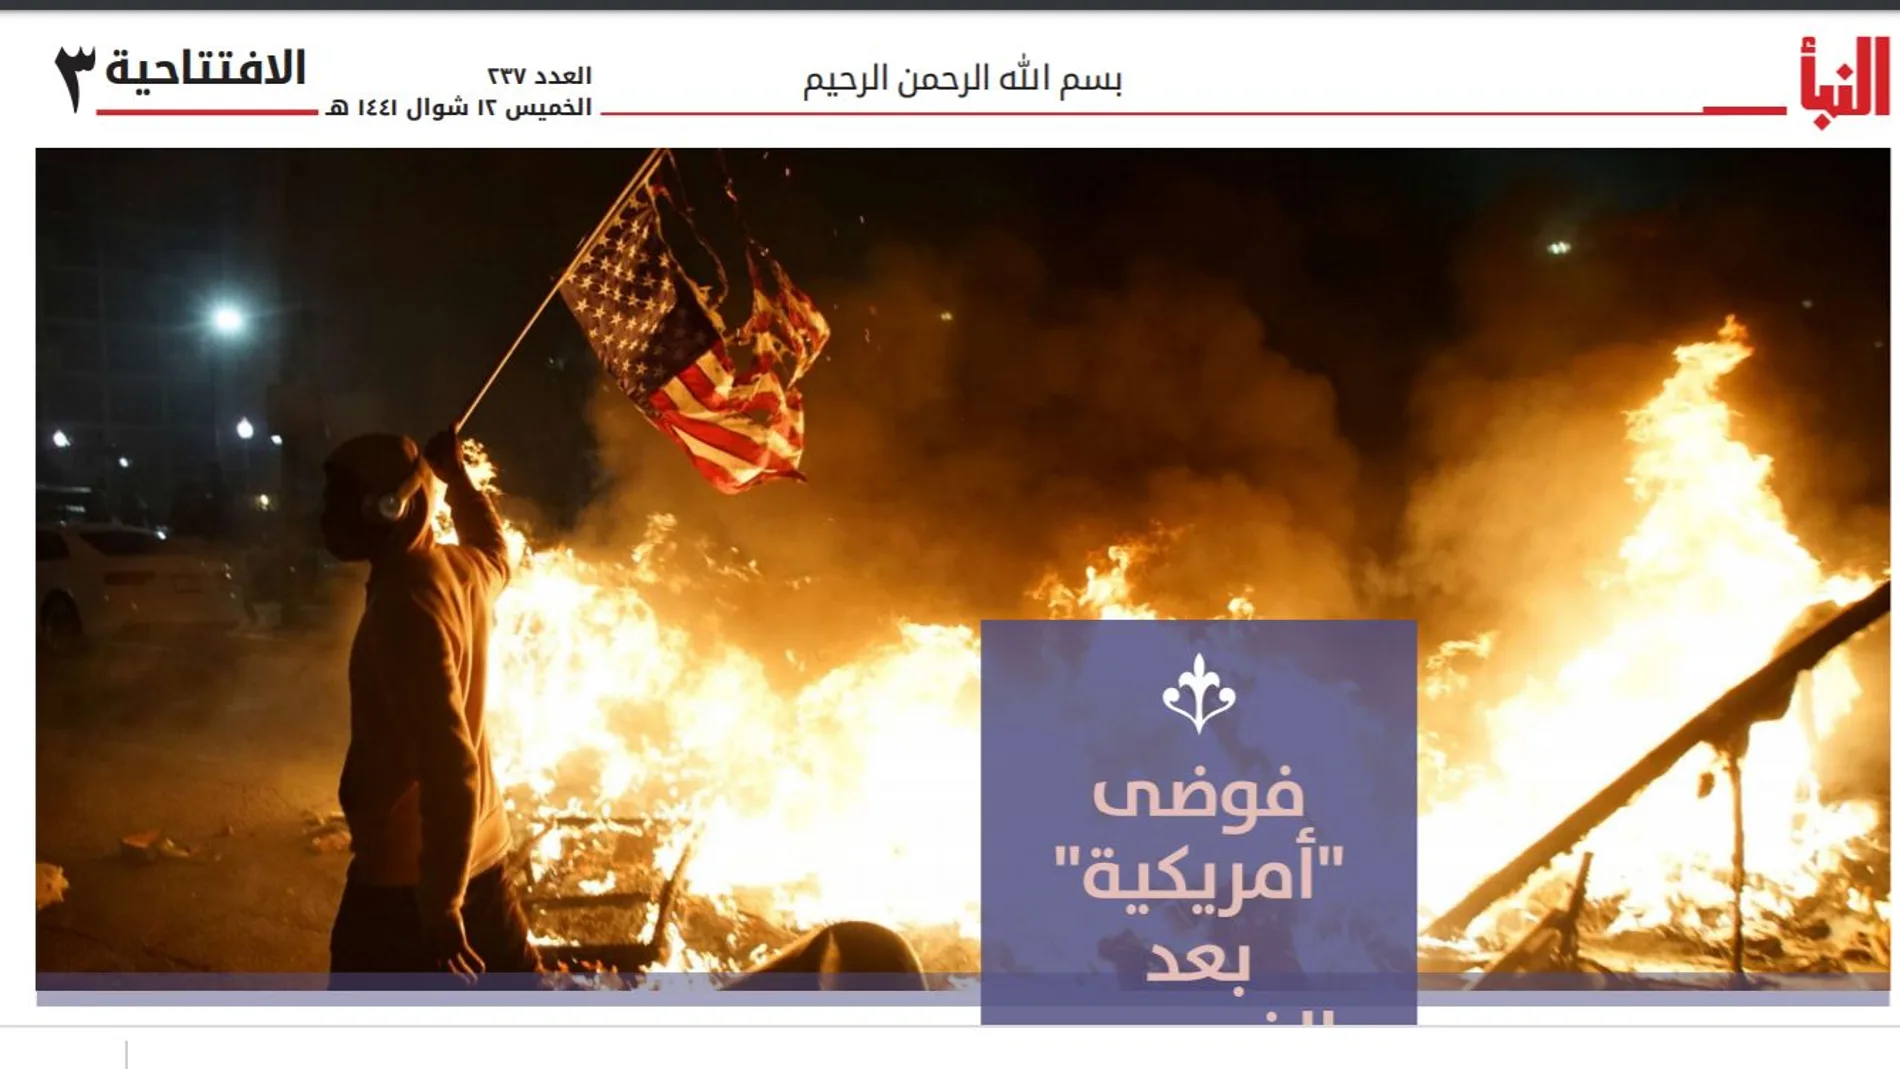 Una de las páginas del semanario Naba publicado ayer en el que se hace referencia a las protestas de EE.UU.